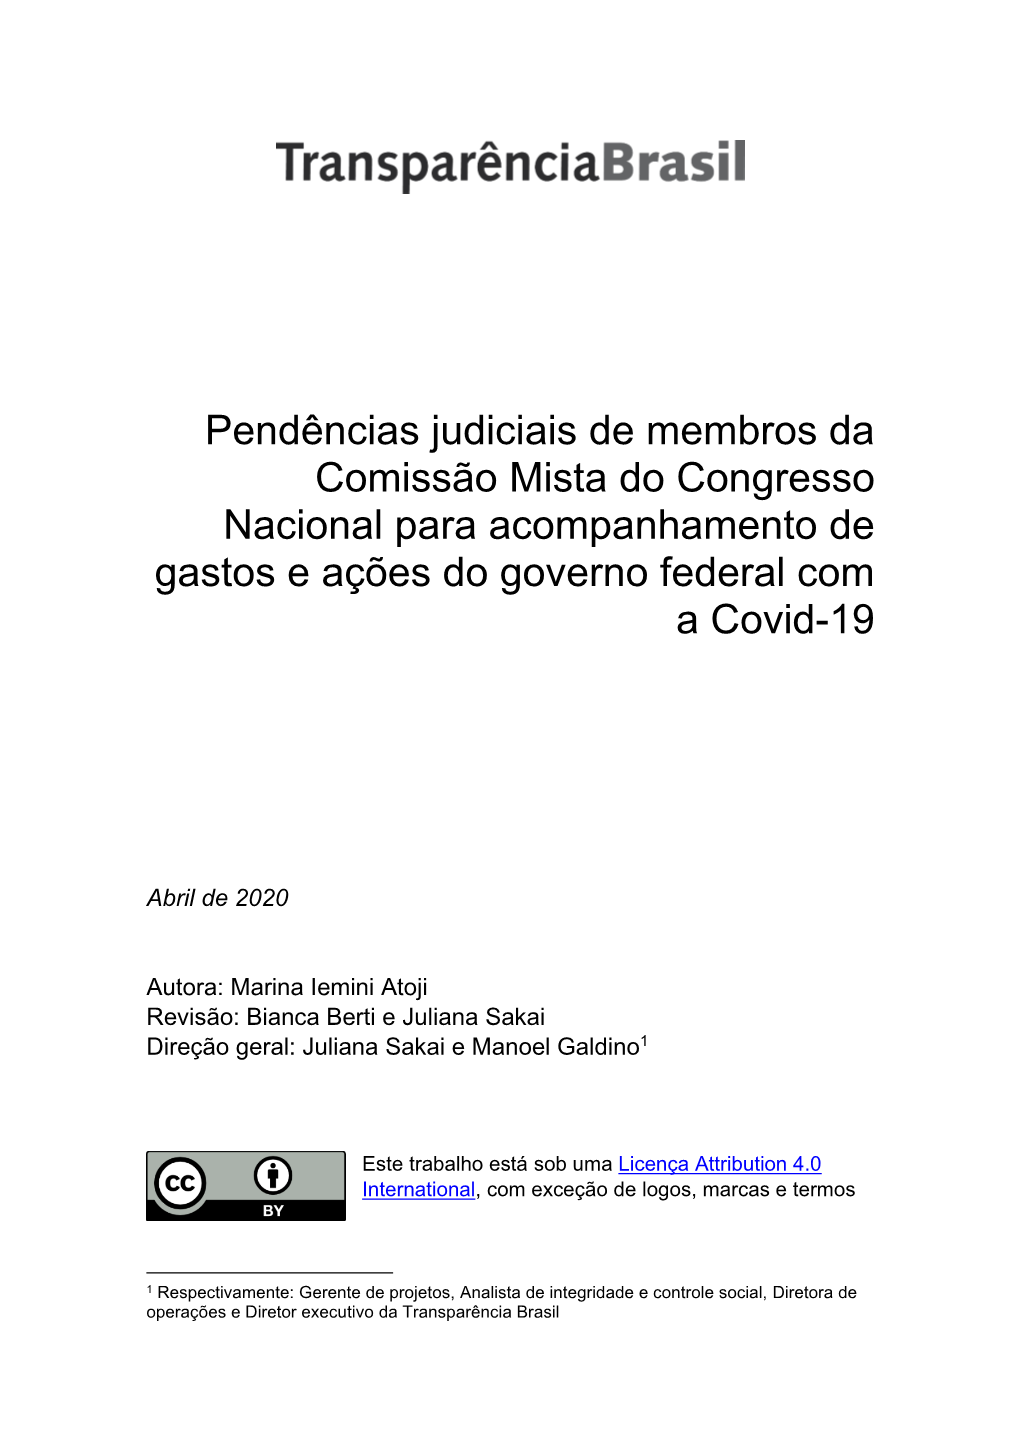 Pendências Judiciais De Membros Da Comissão Mista Do Congresso Nacional Para Acompanhamento De Gastos E Ações Do Governo Federal Com a Covid-19